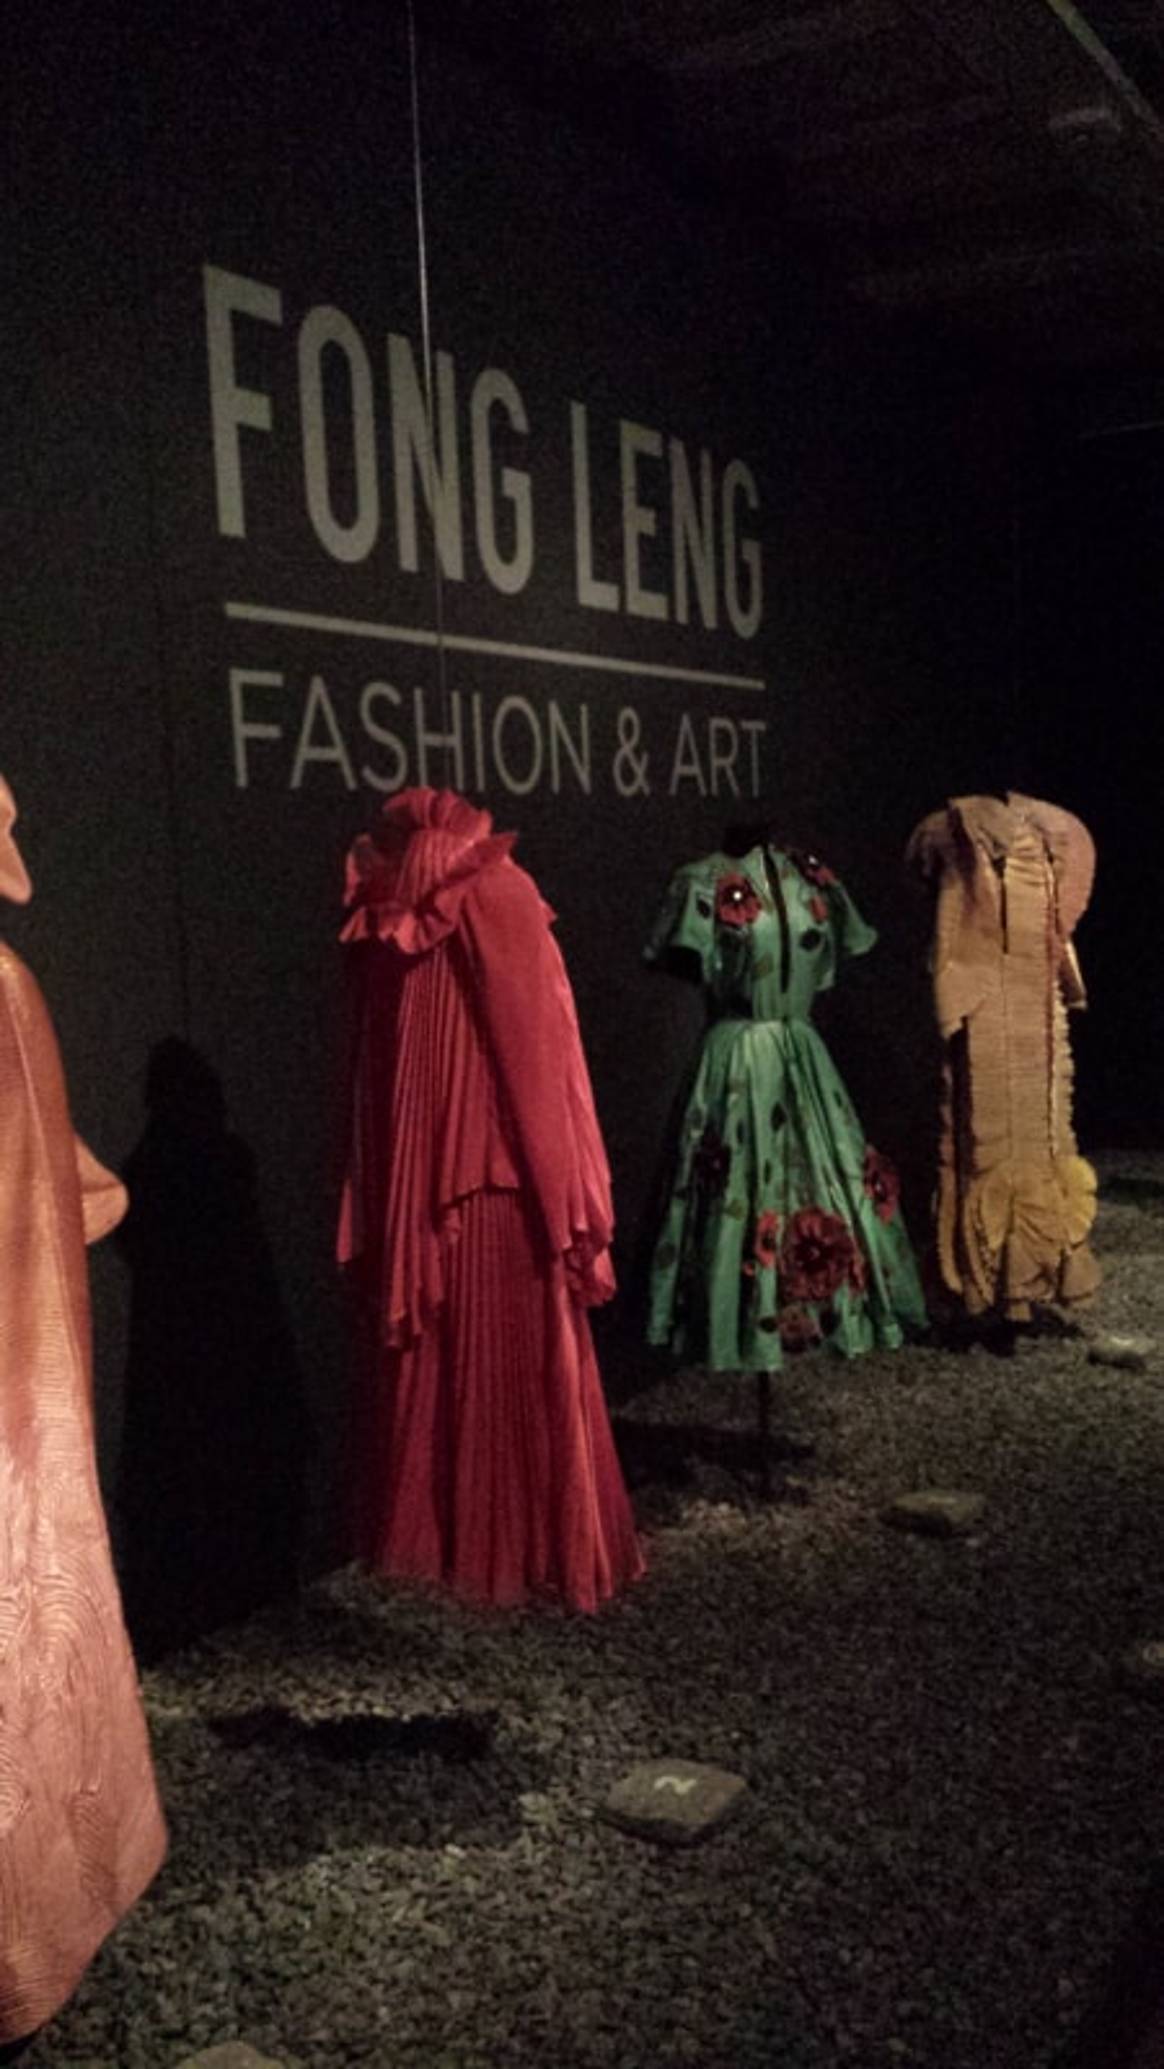 Fong-Leng tentoonstelling feestelijk geopend